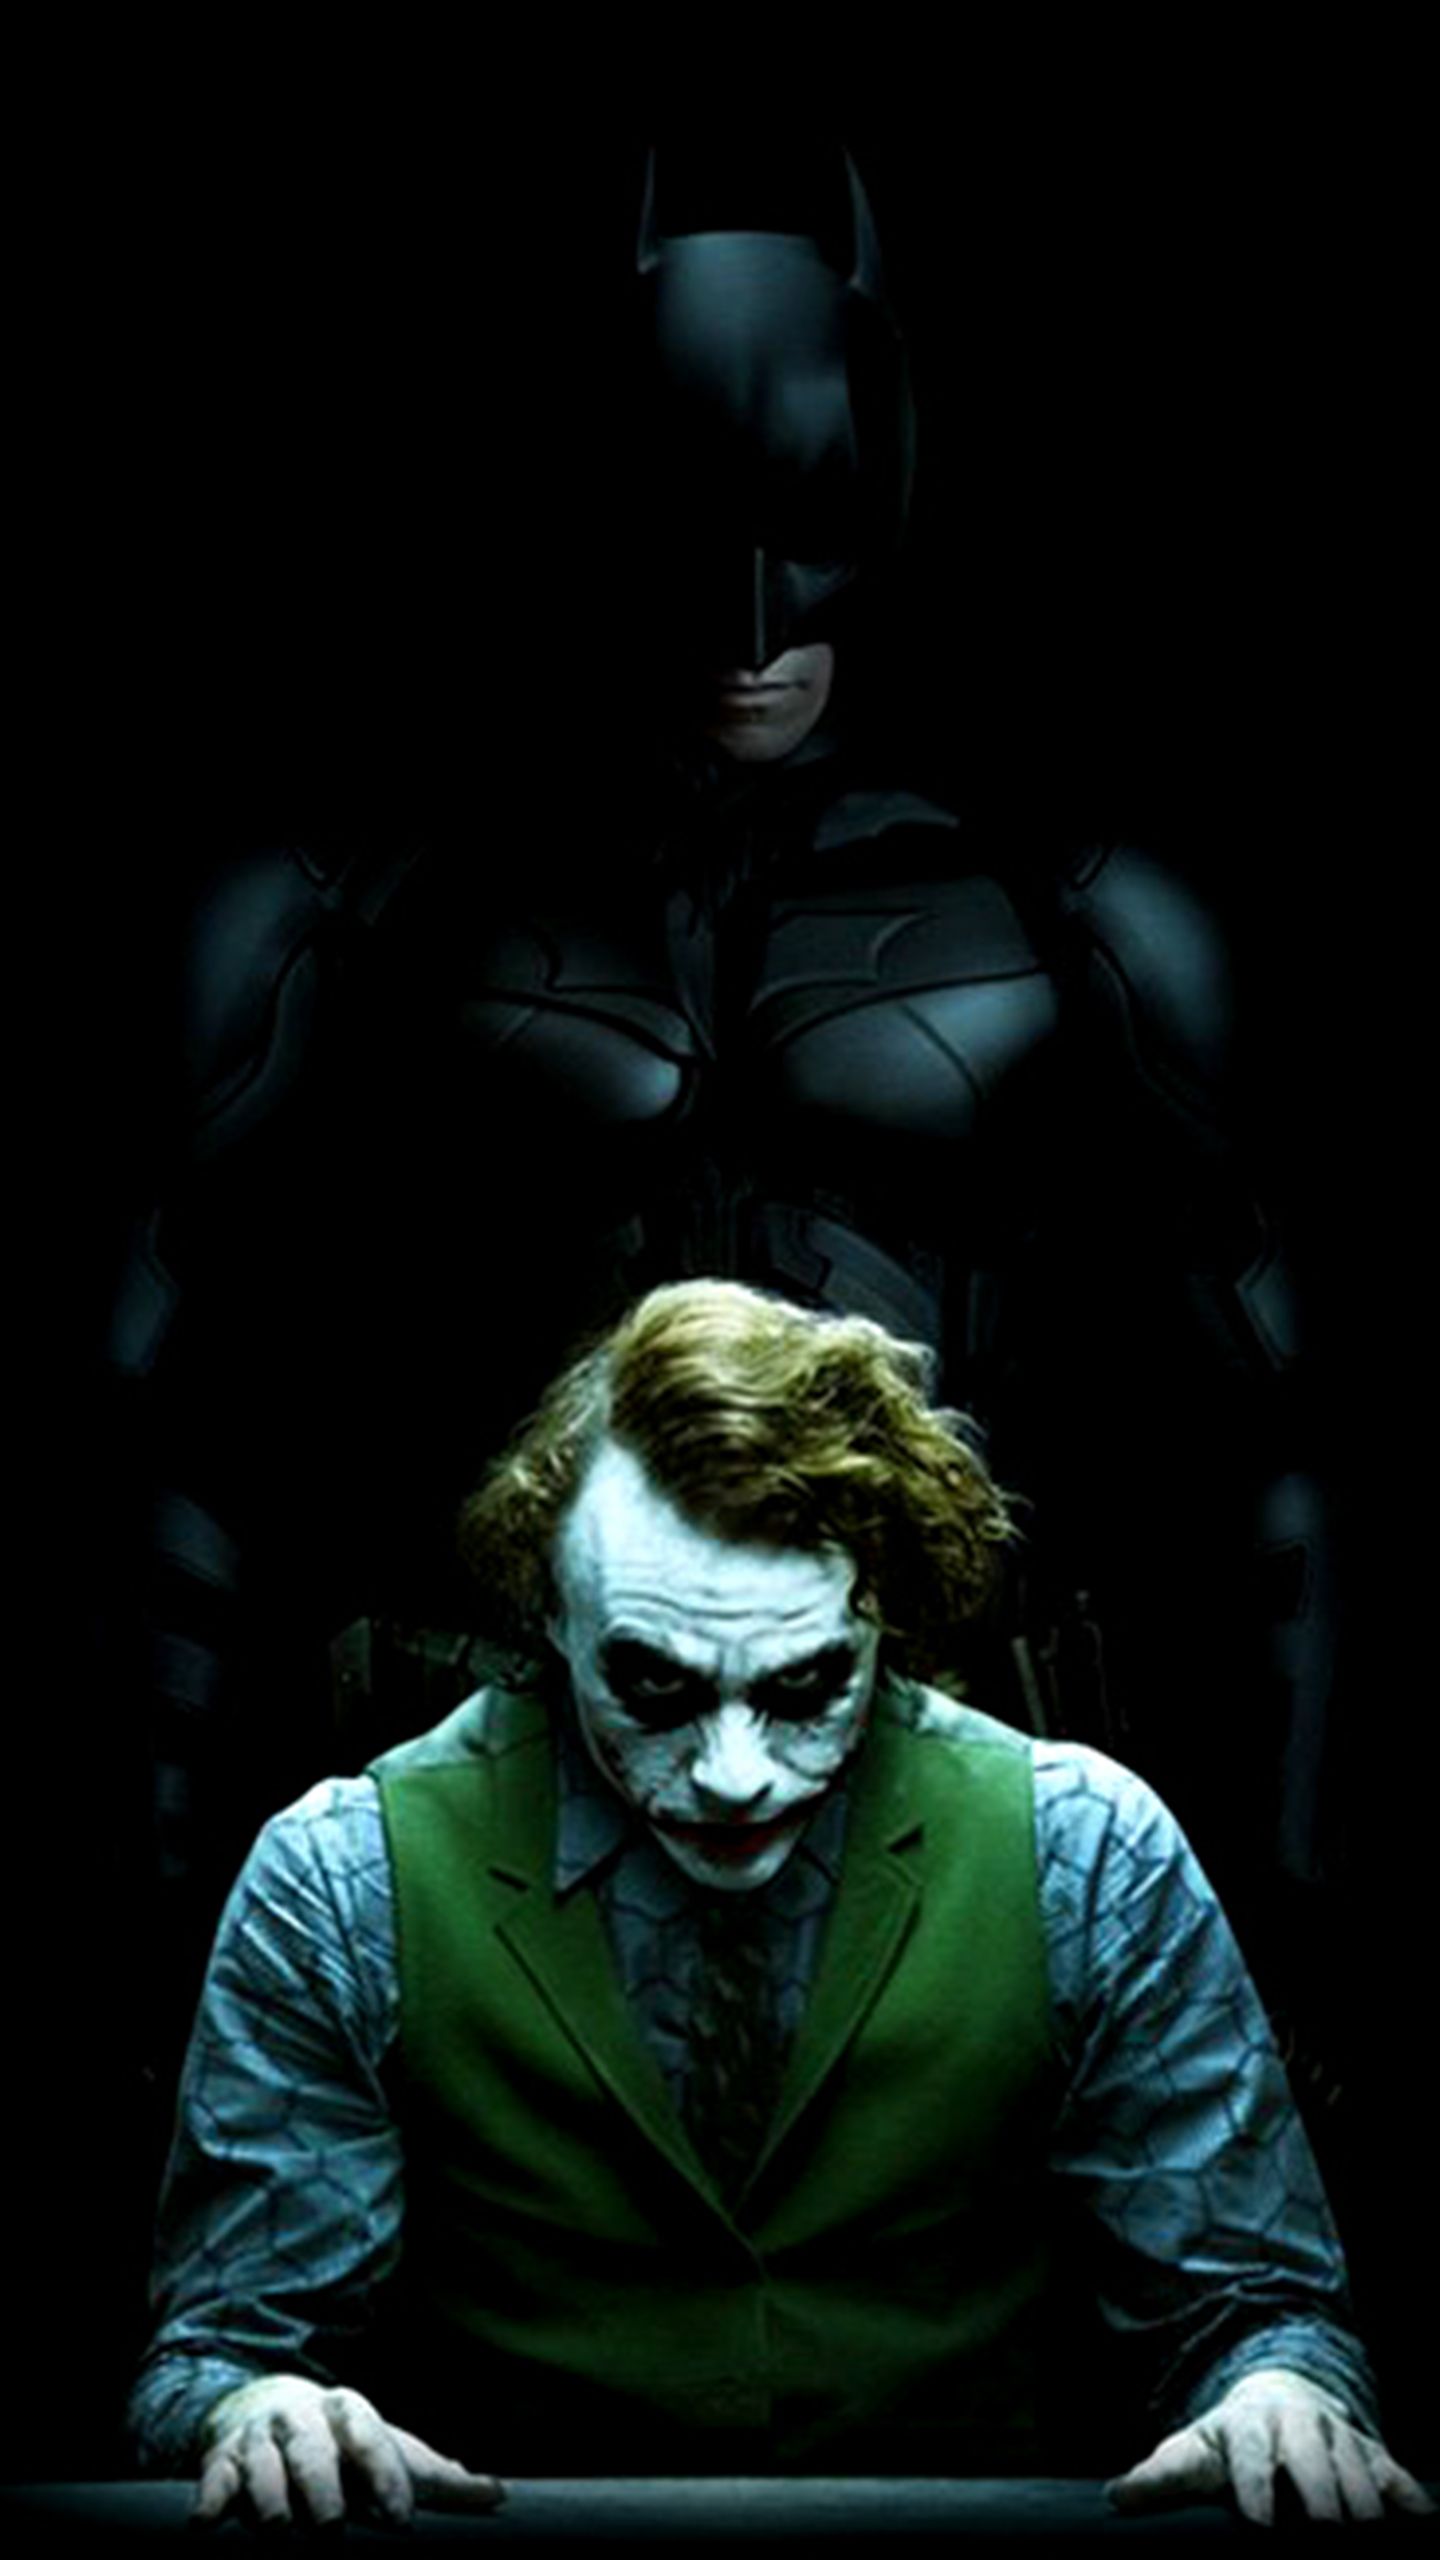 Joker Quotes I Believe , HD Wallpaper & Backgrounds